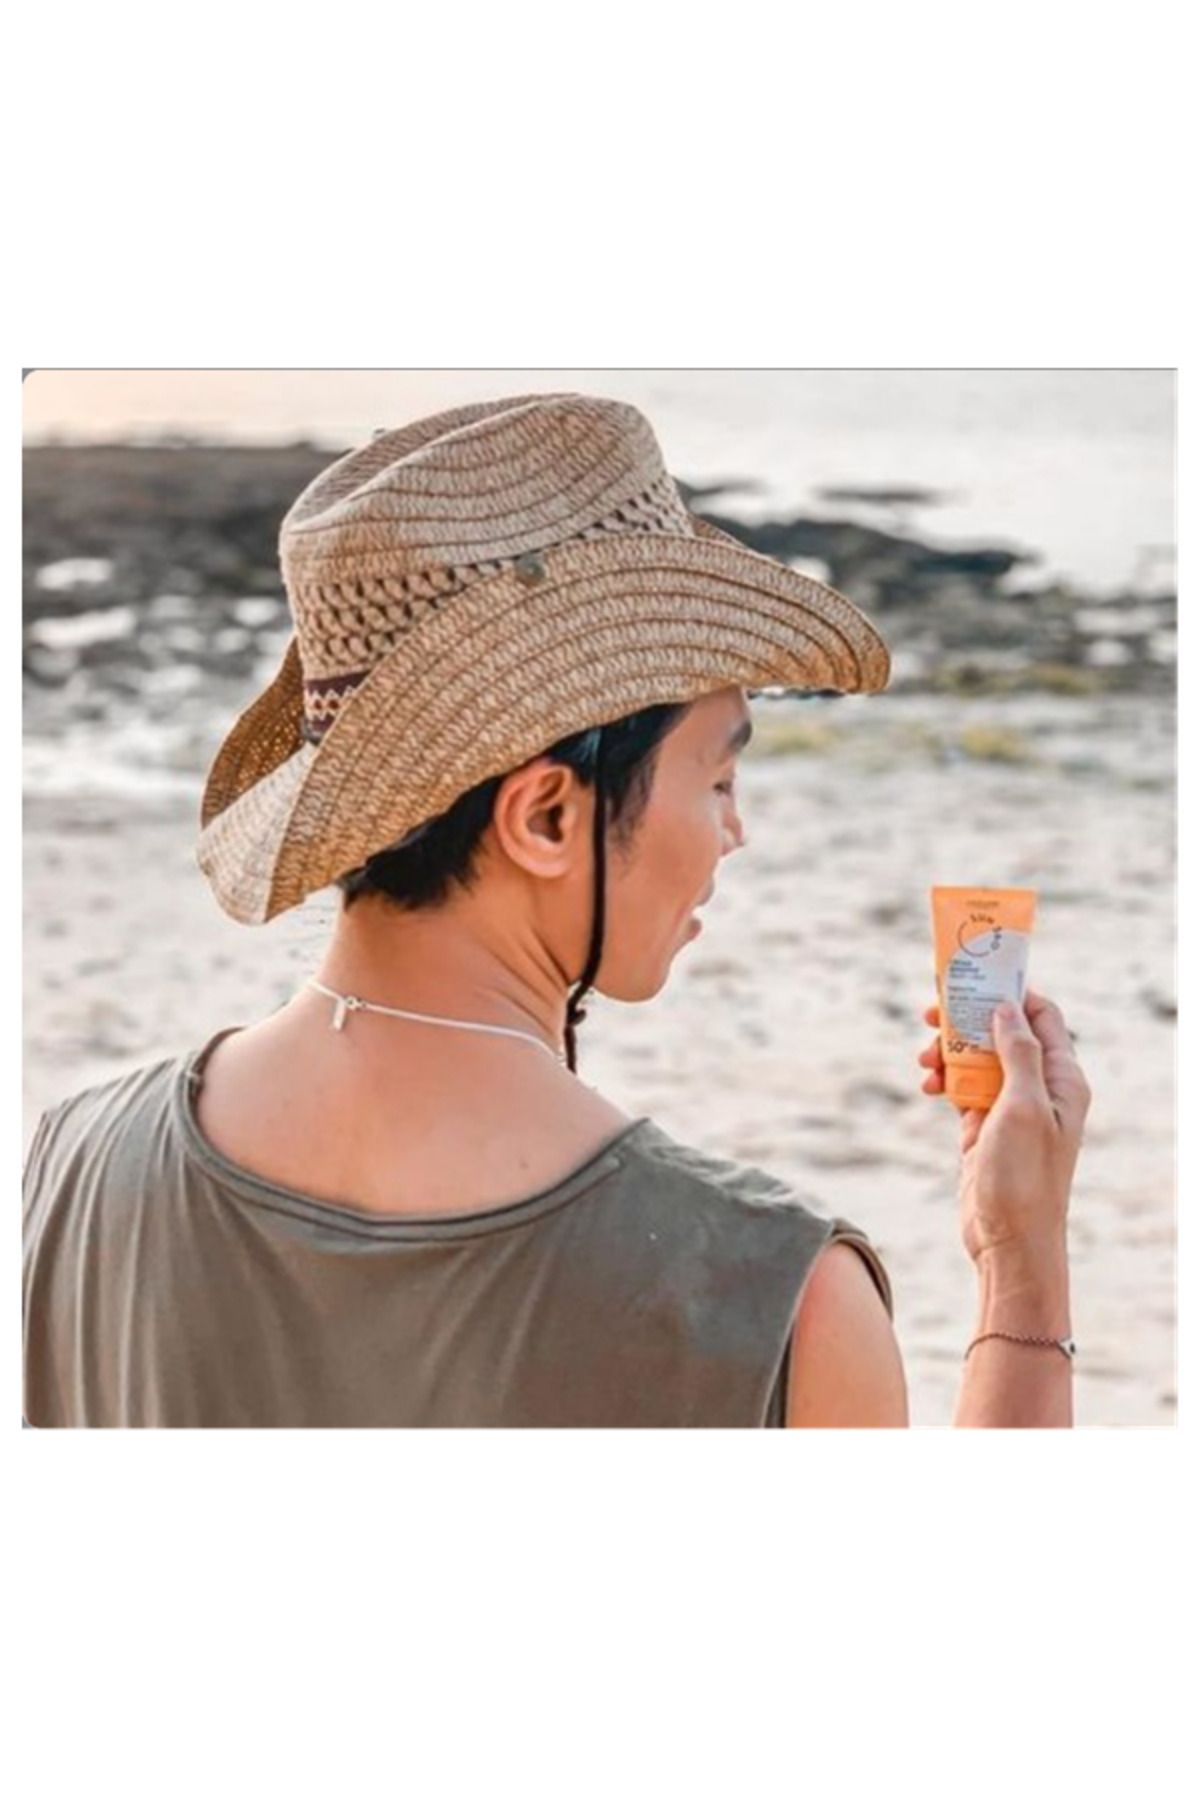 Oriflame Sun 360 Hassas Ciltler İçin Özel Geliştirilmiş Yüz ve Vücut için 50+ SPF Güneş Kremi